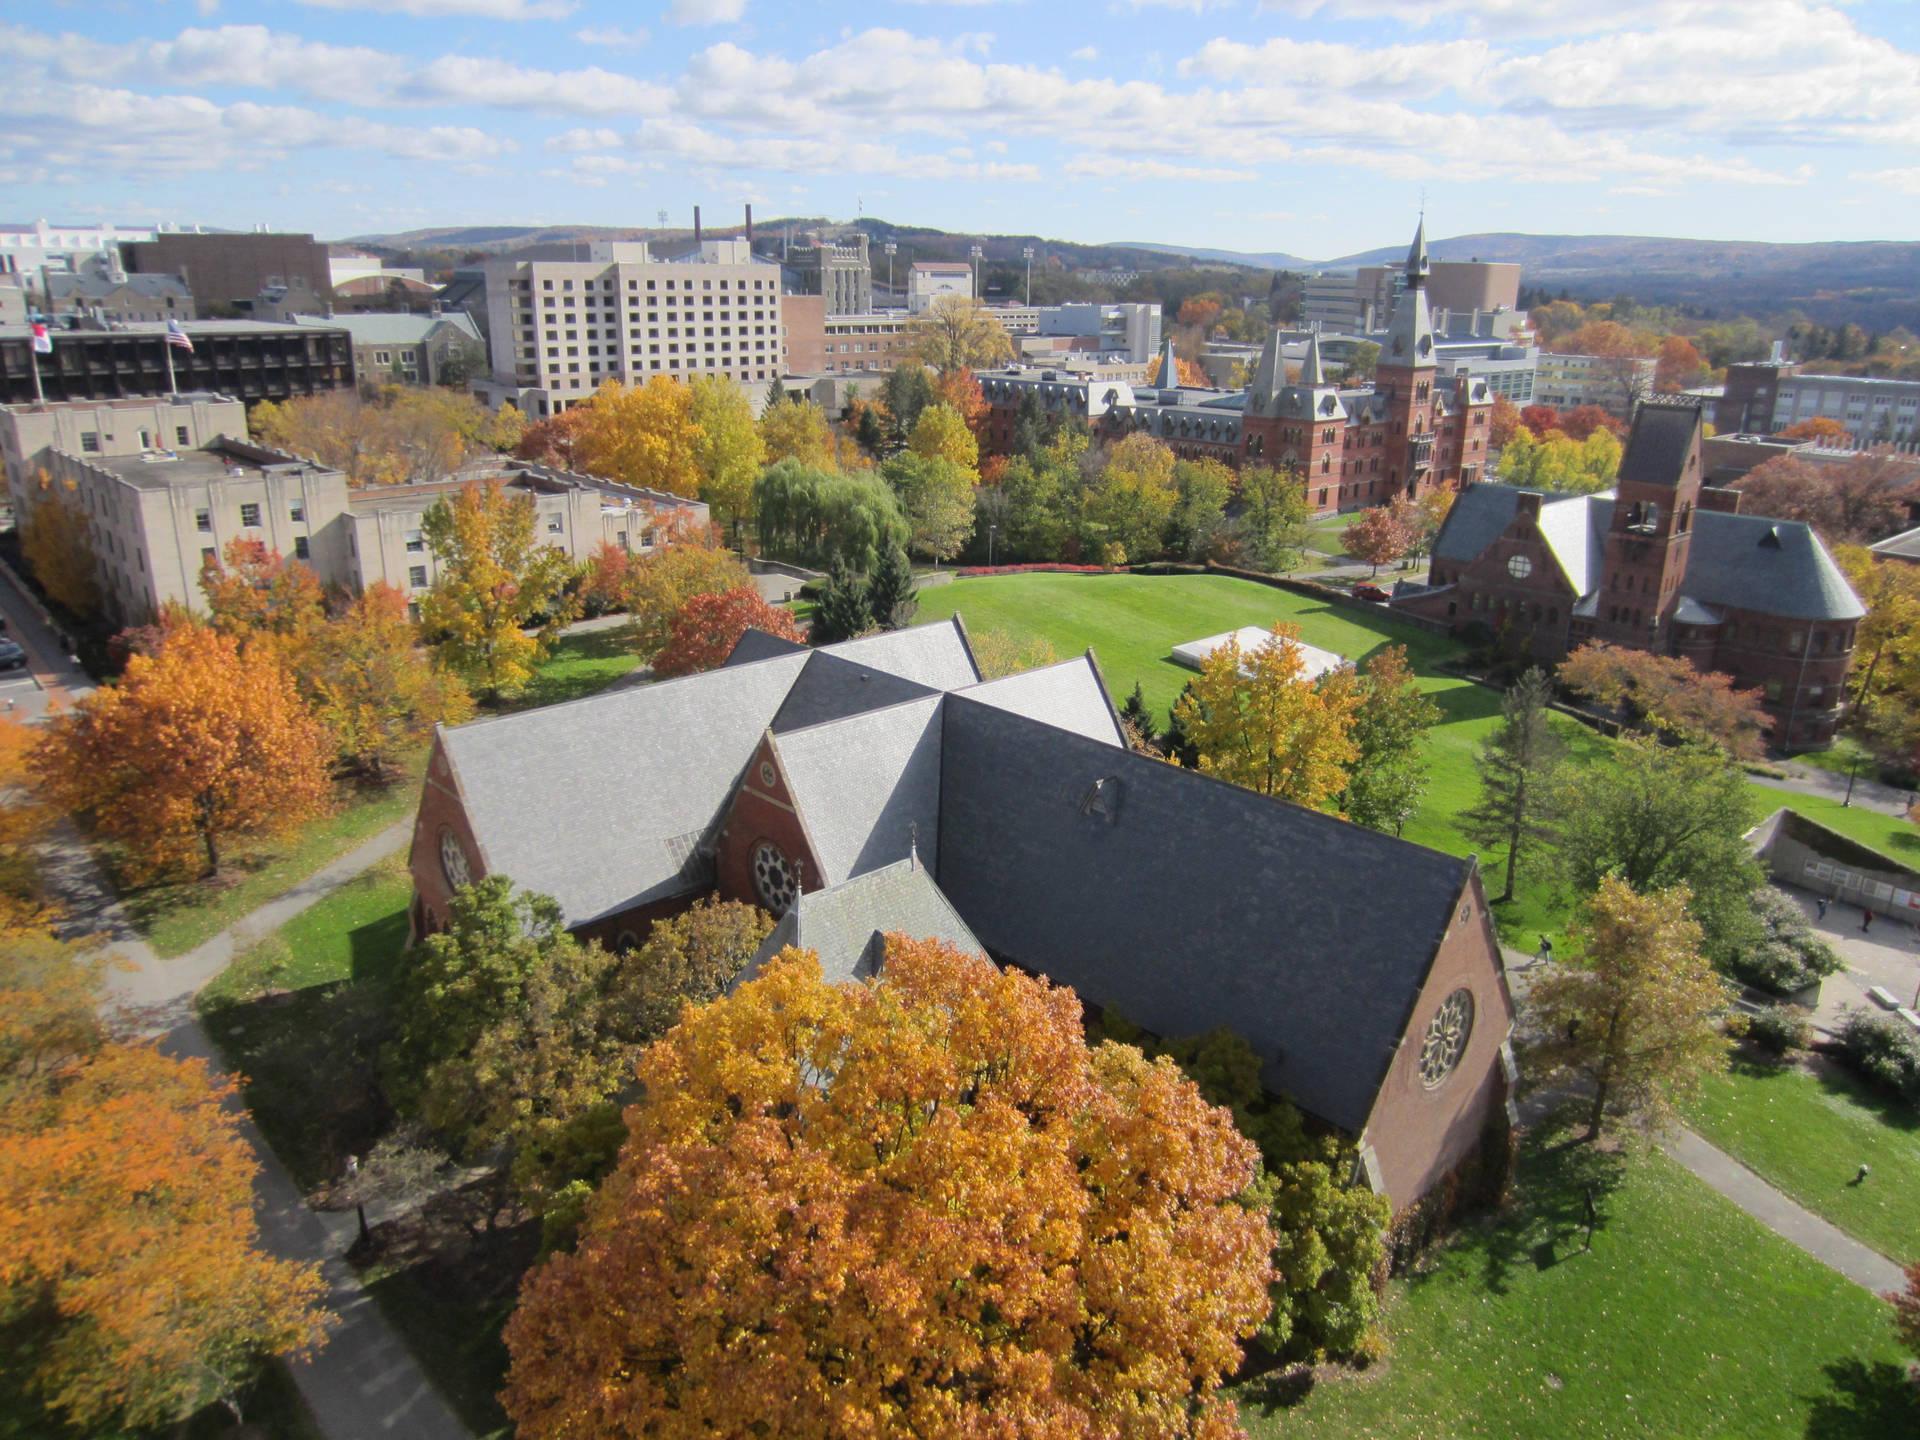 Vistaaérea Del Campus De La Universidad Cornell En Ithaca. Fondo de pantalla